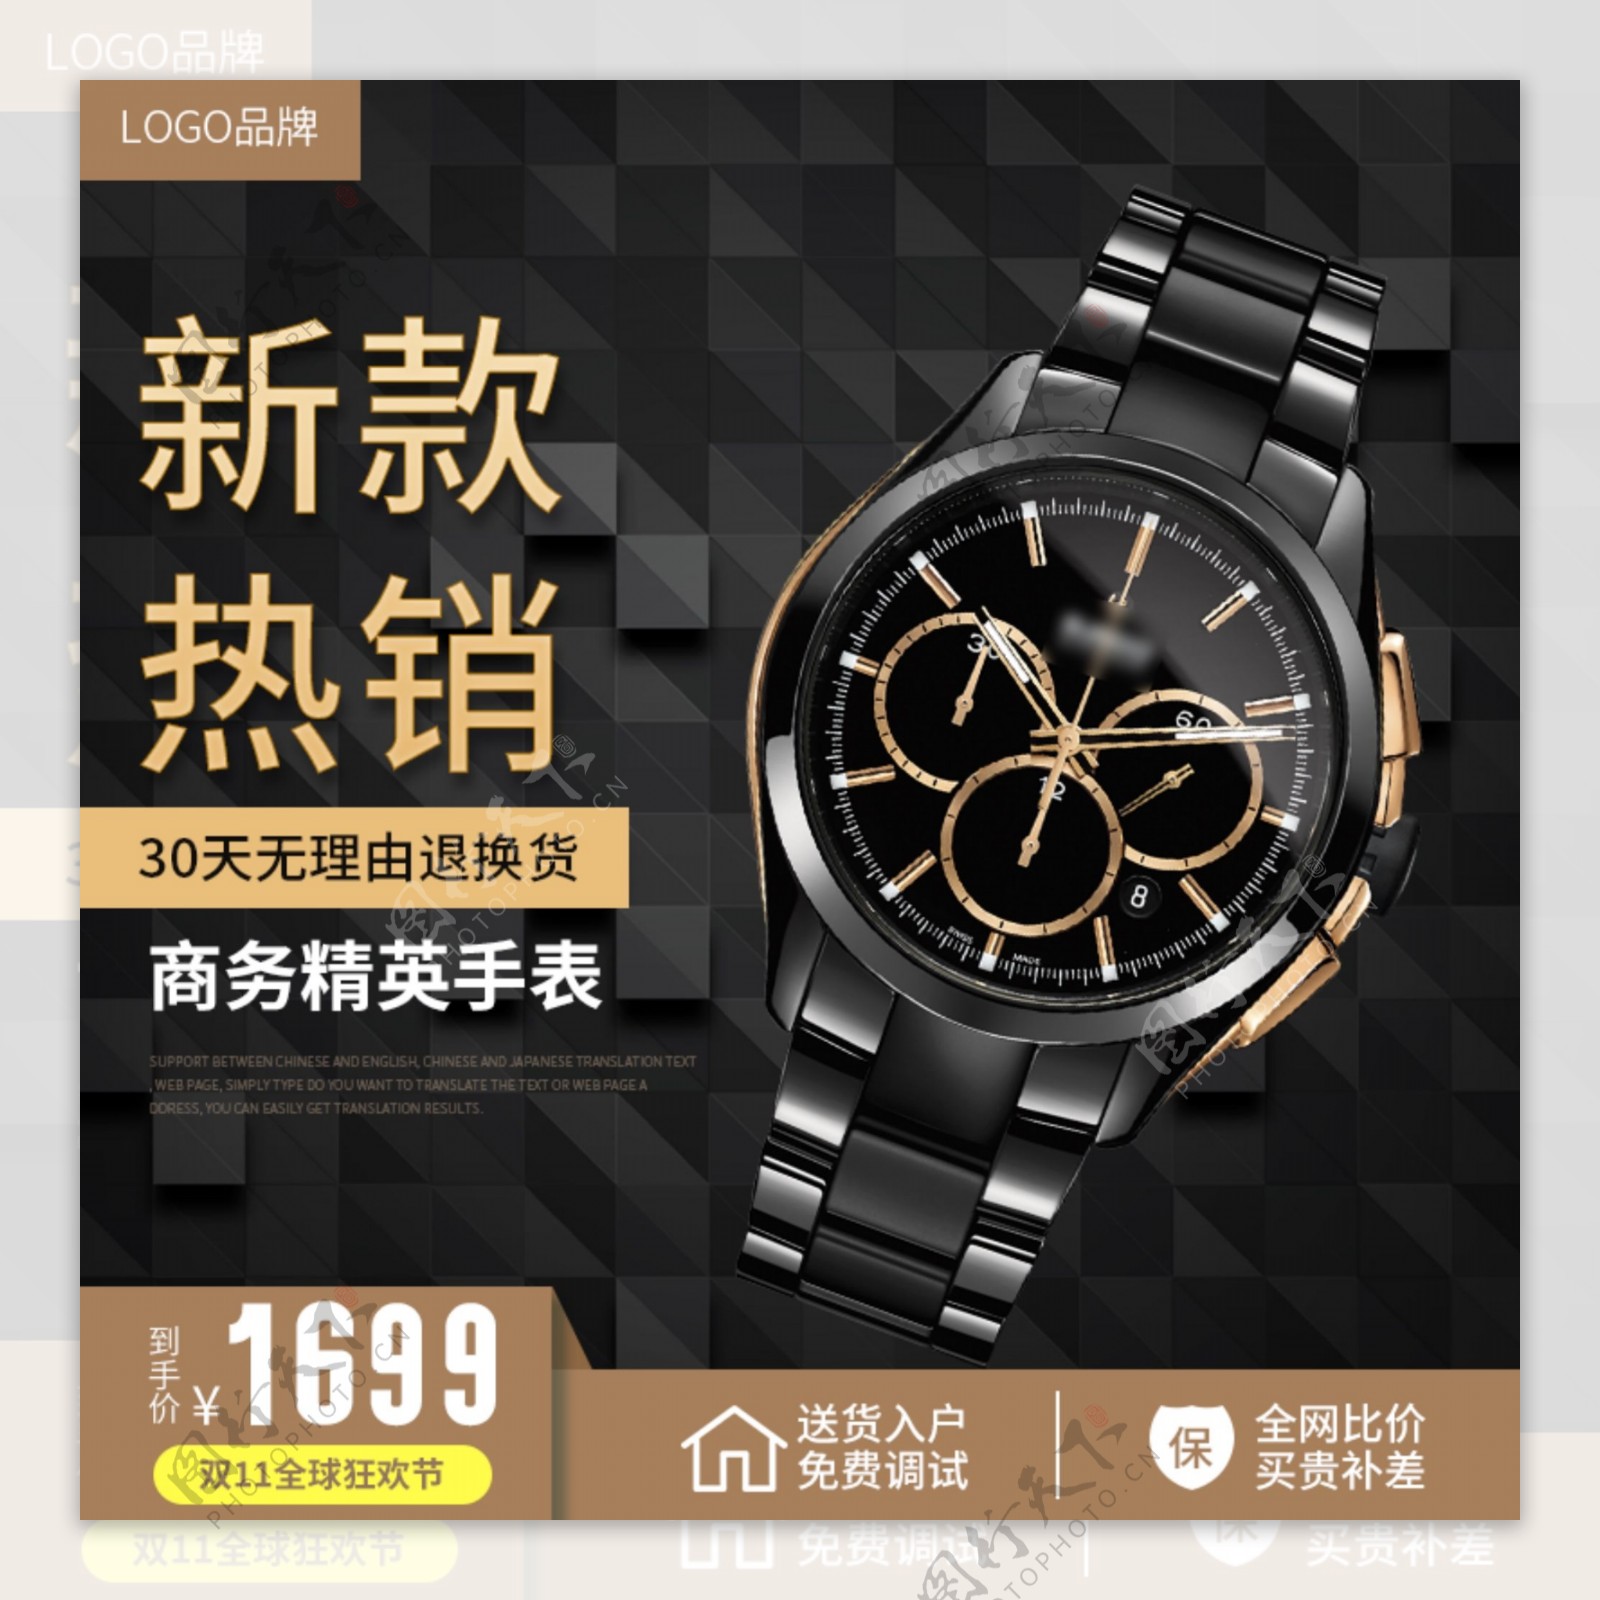 电商天猫双十一新款手表热销商务风格主图